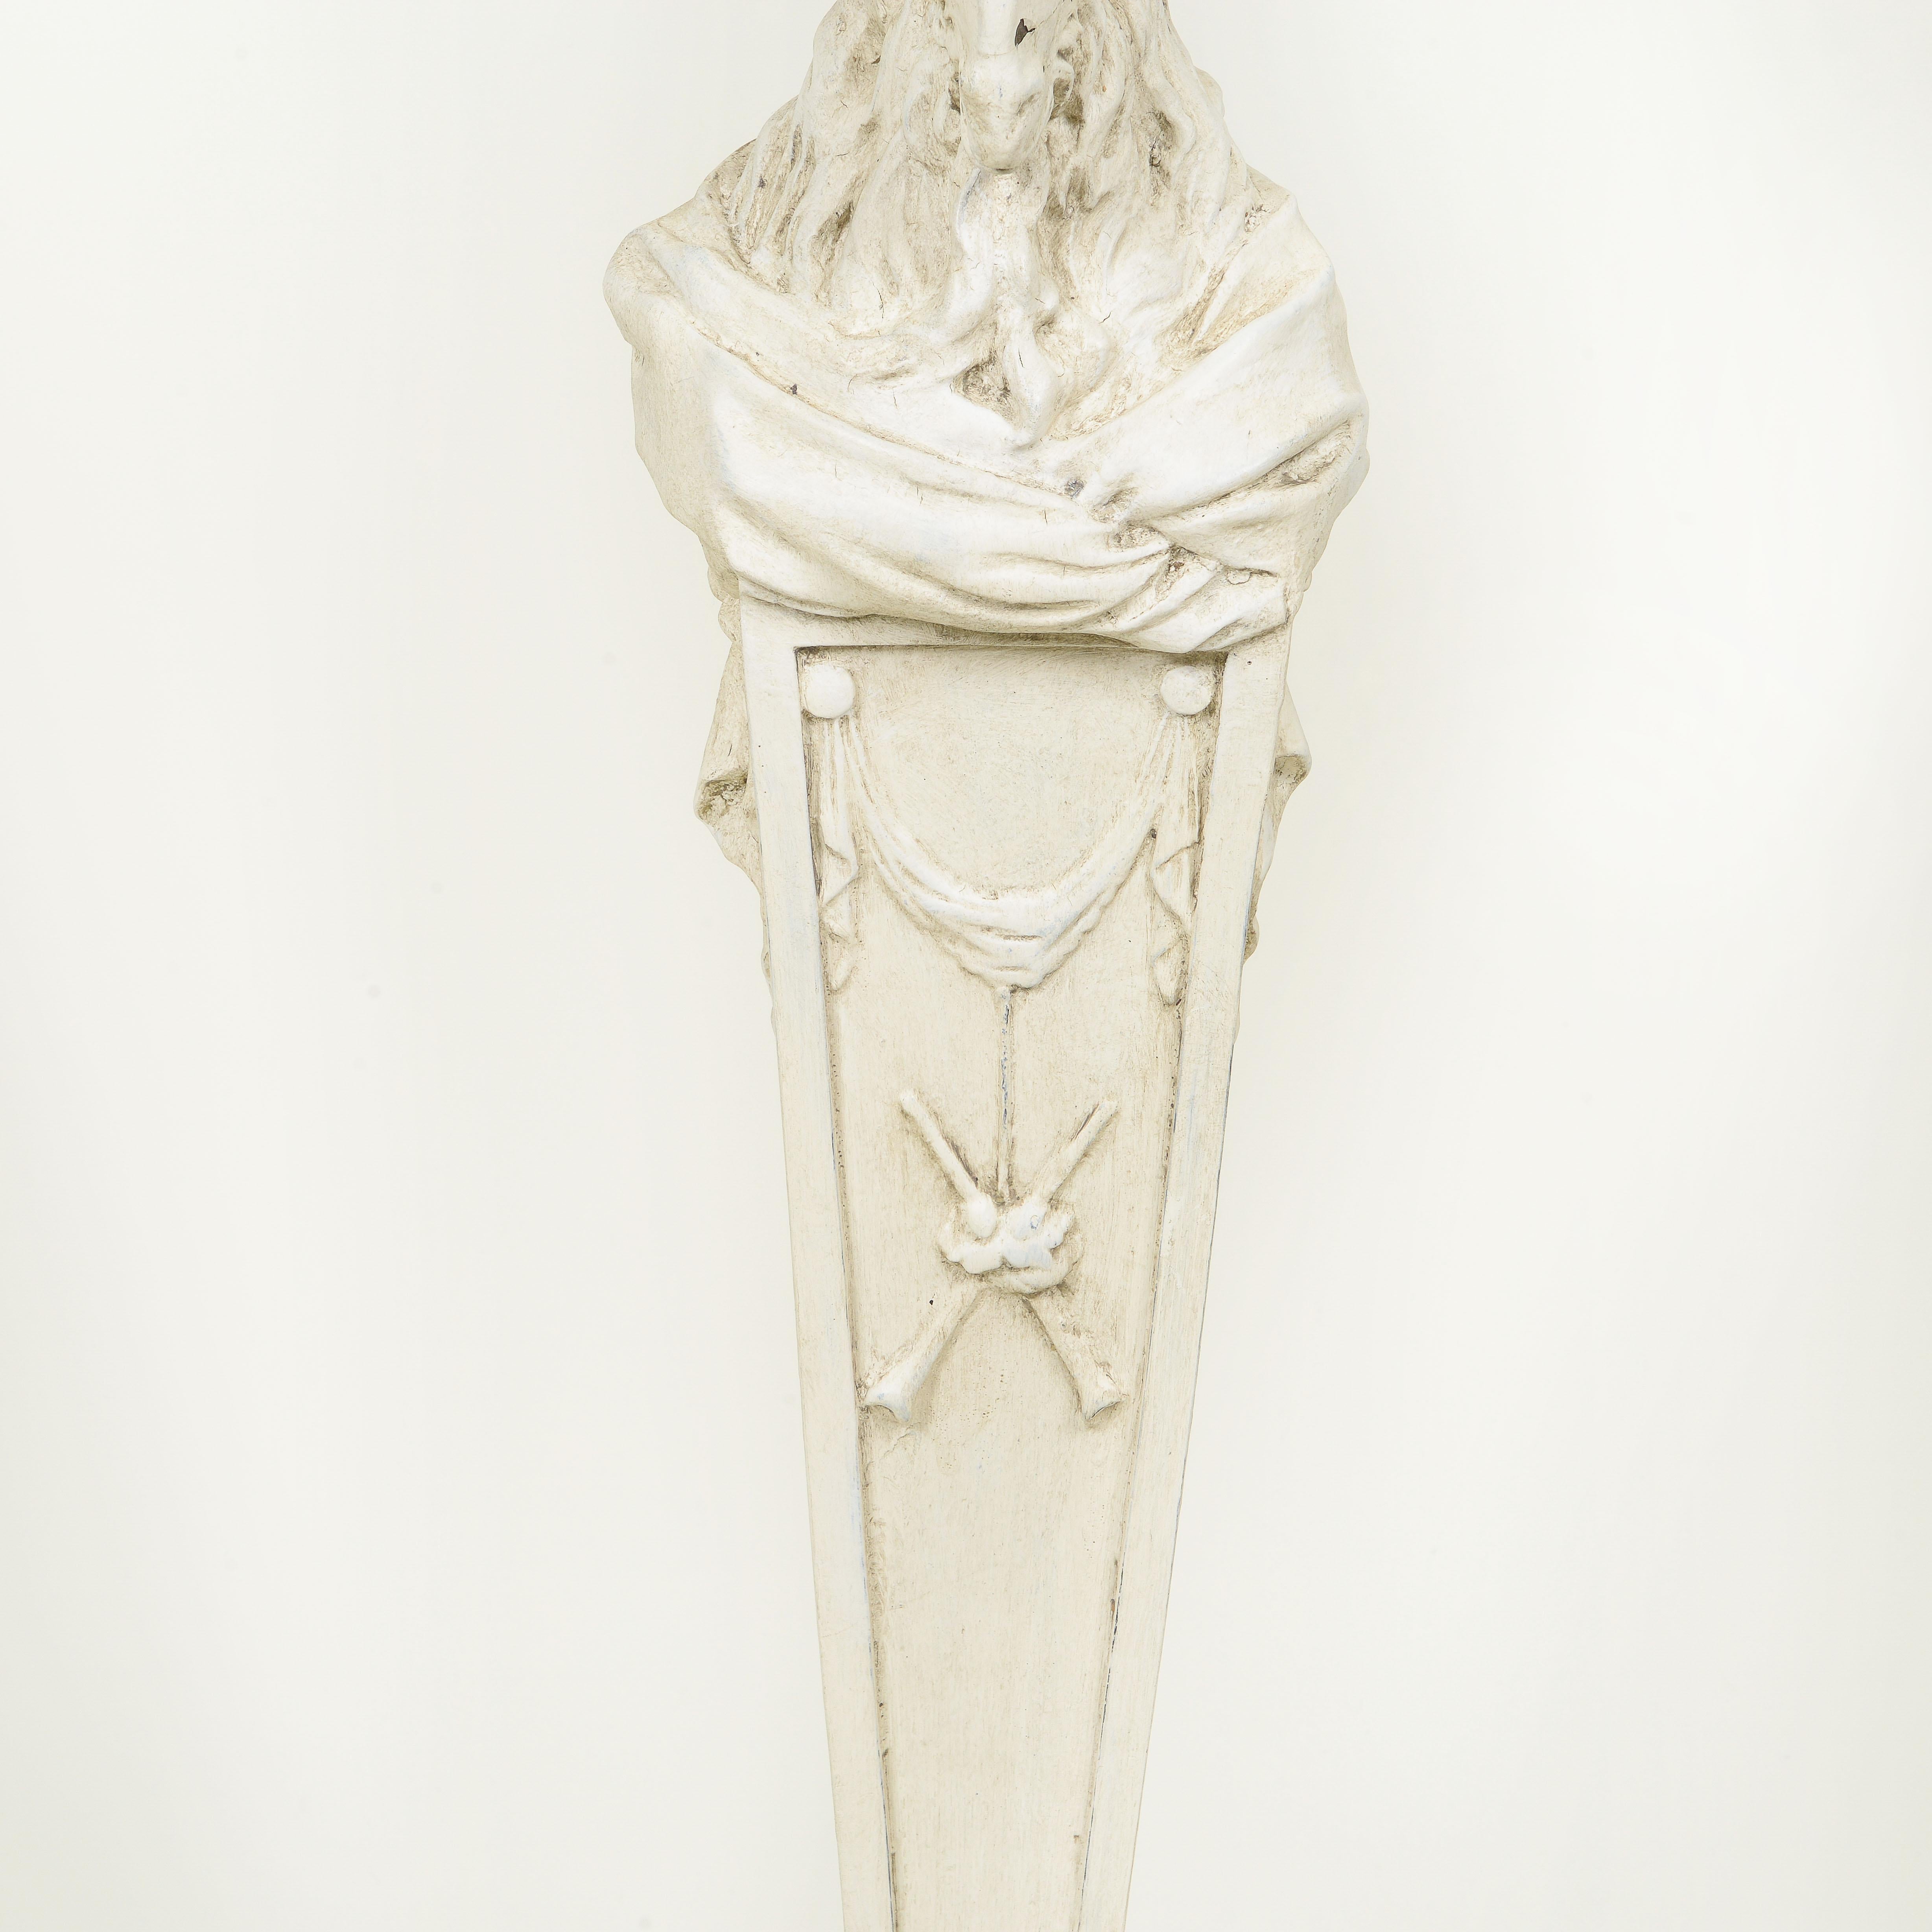 The Pedestal im neoklassischen Stil, weiß bemalt und geschnitzt (Holz)